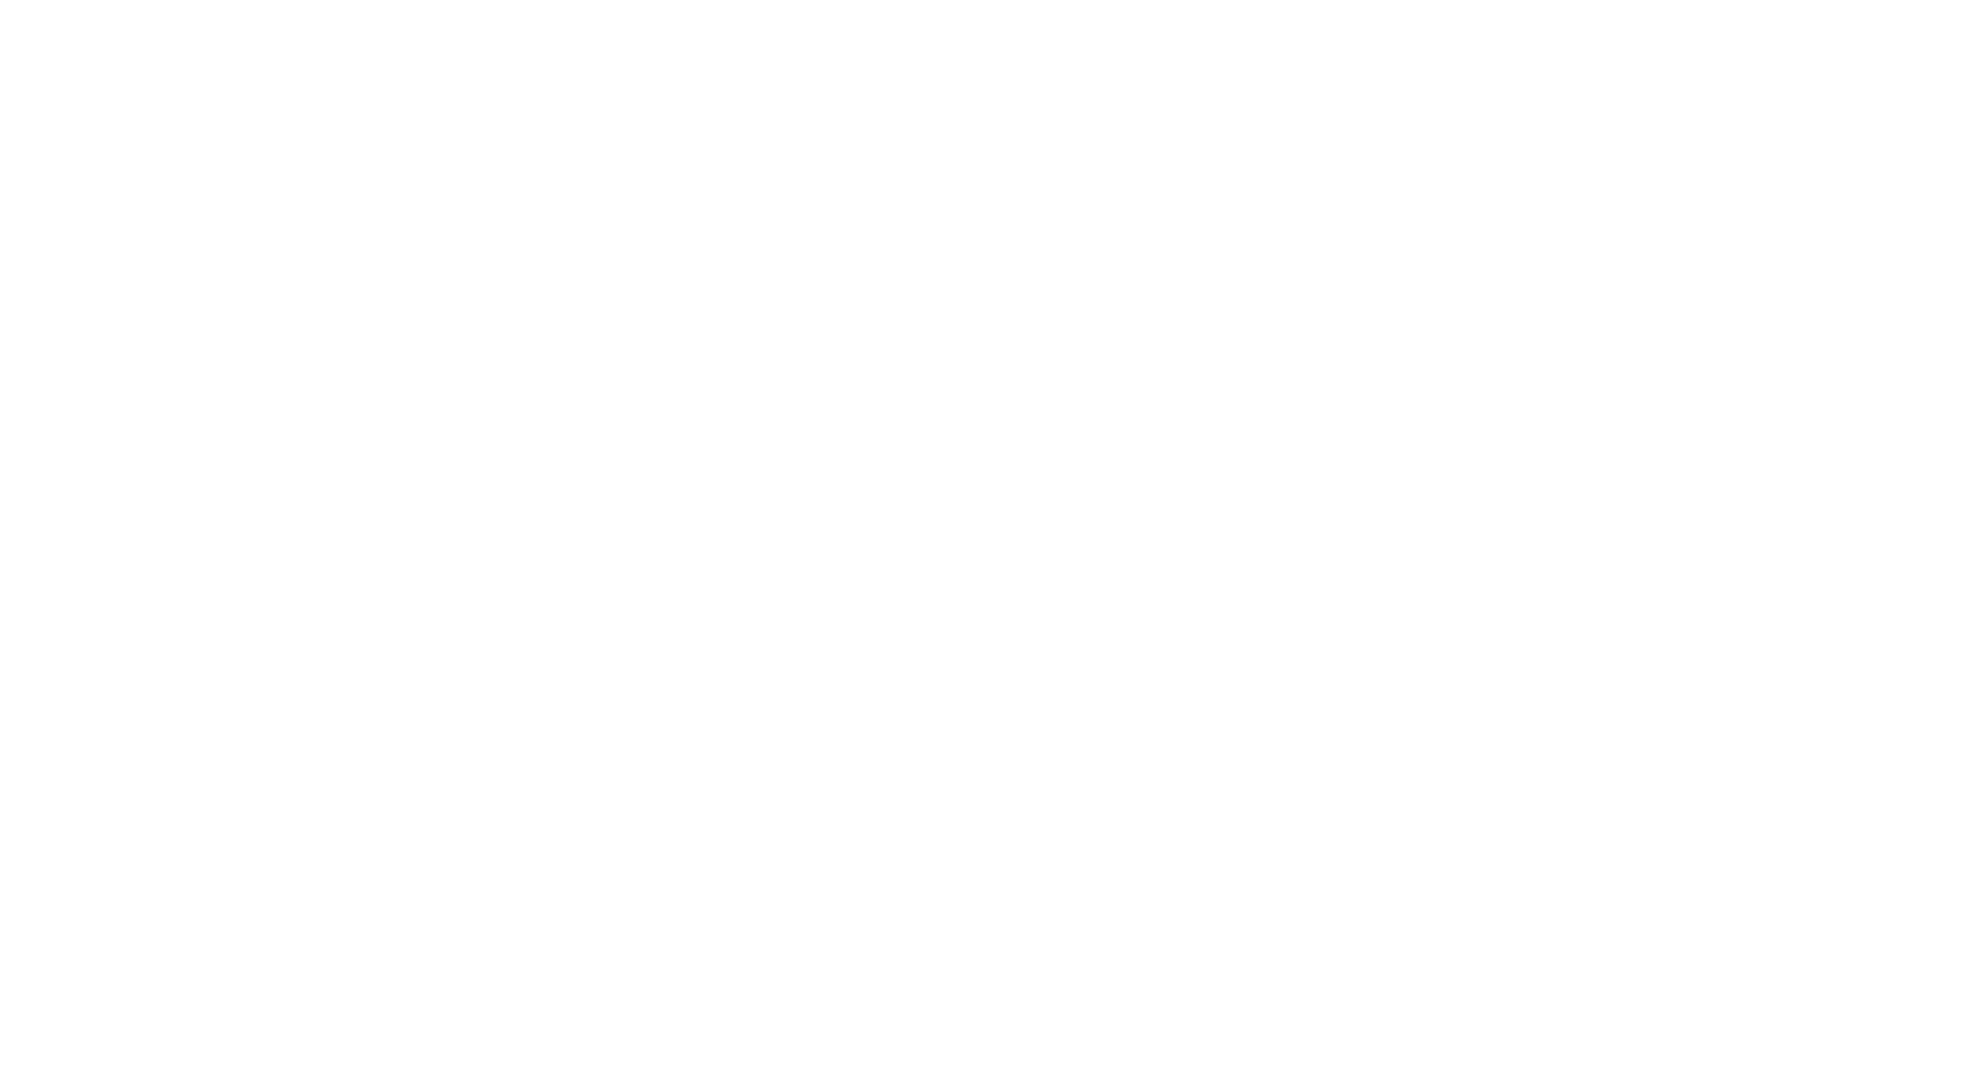 GGP Survey